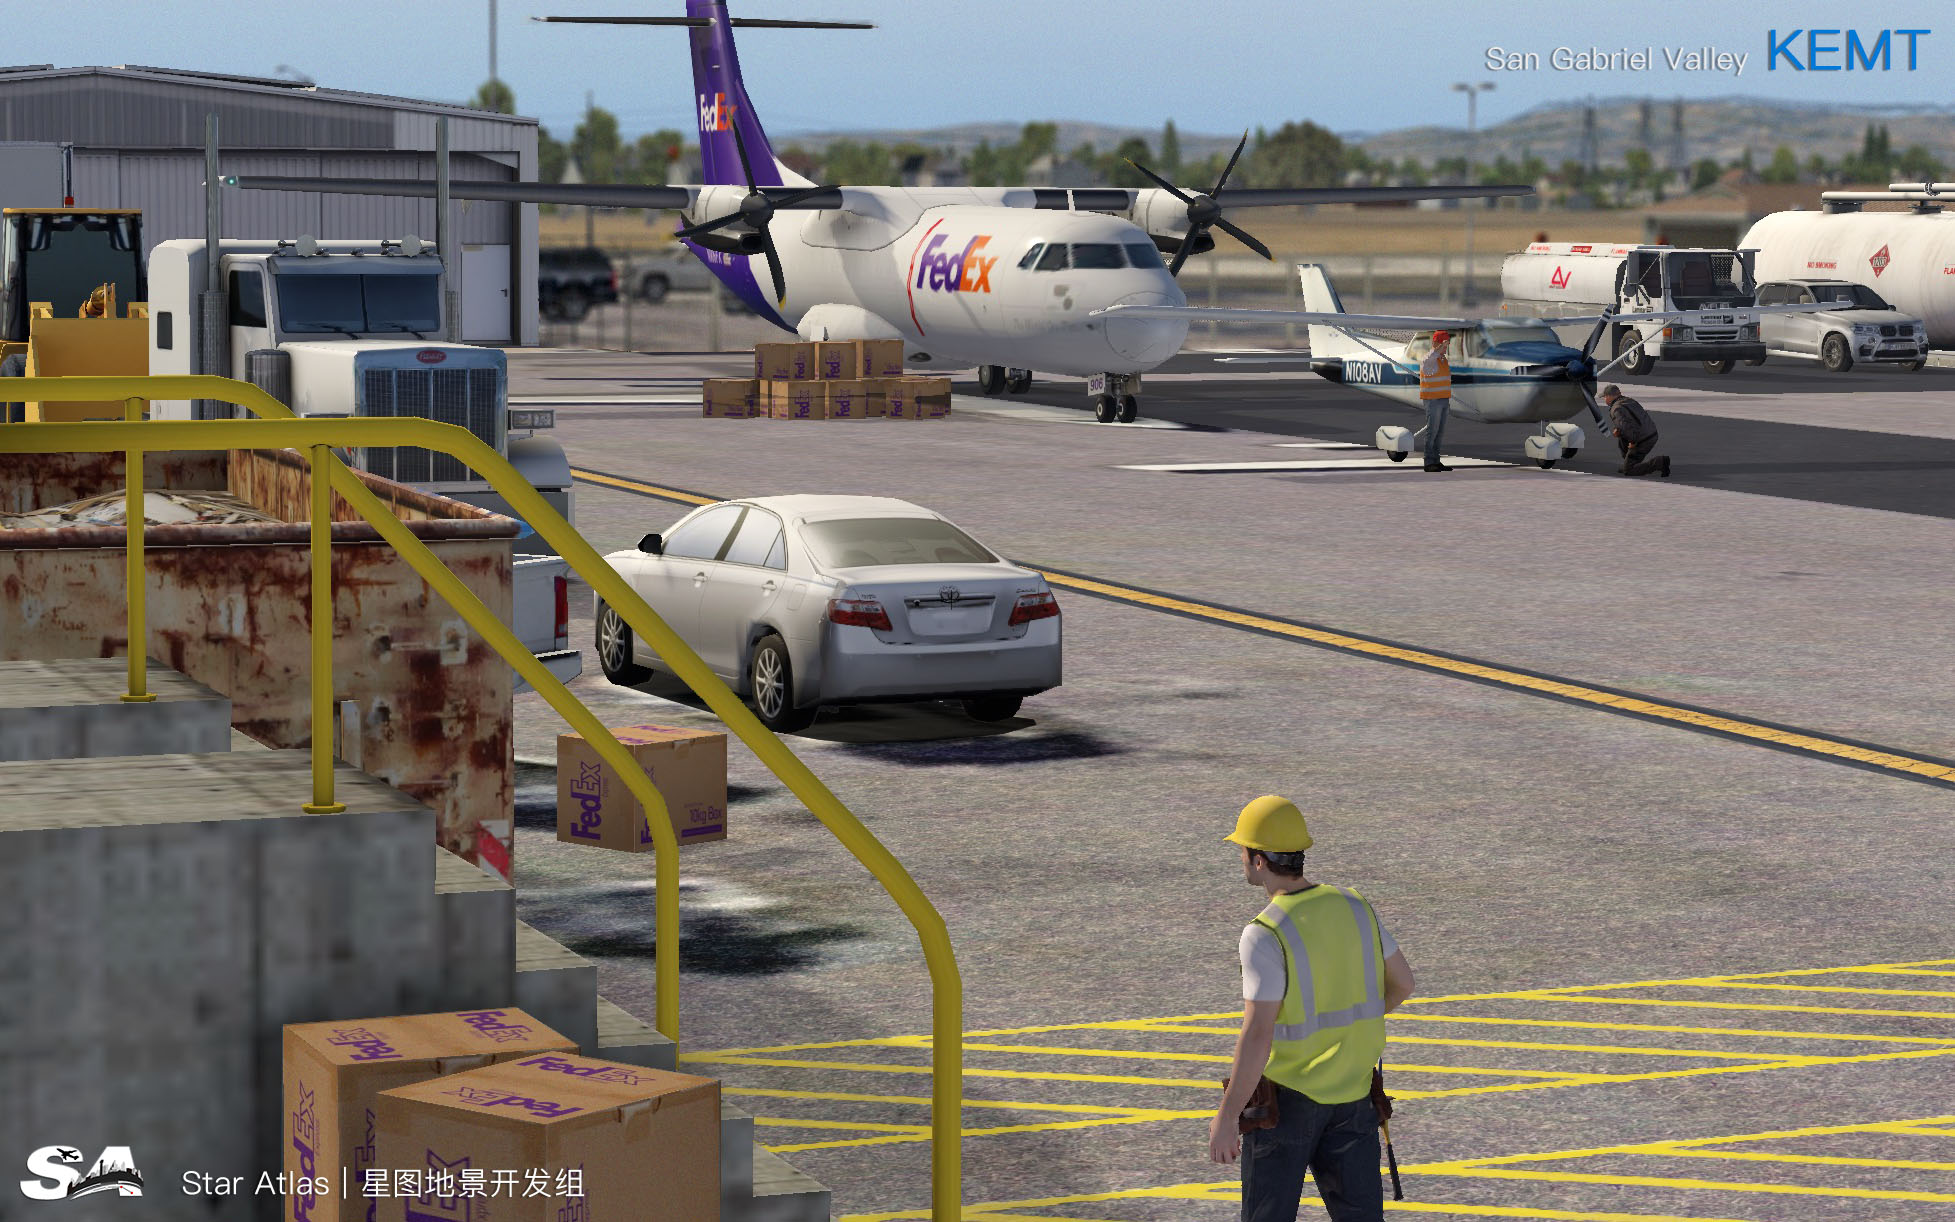 【X-Plane】KEMT-圣盖博谷机场 HD 1.0-5254 